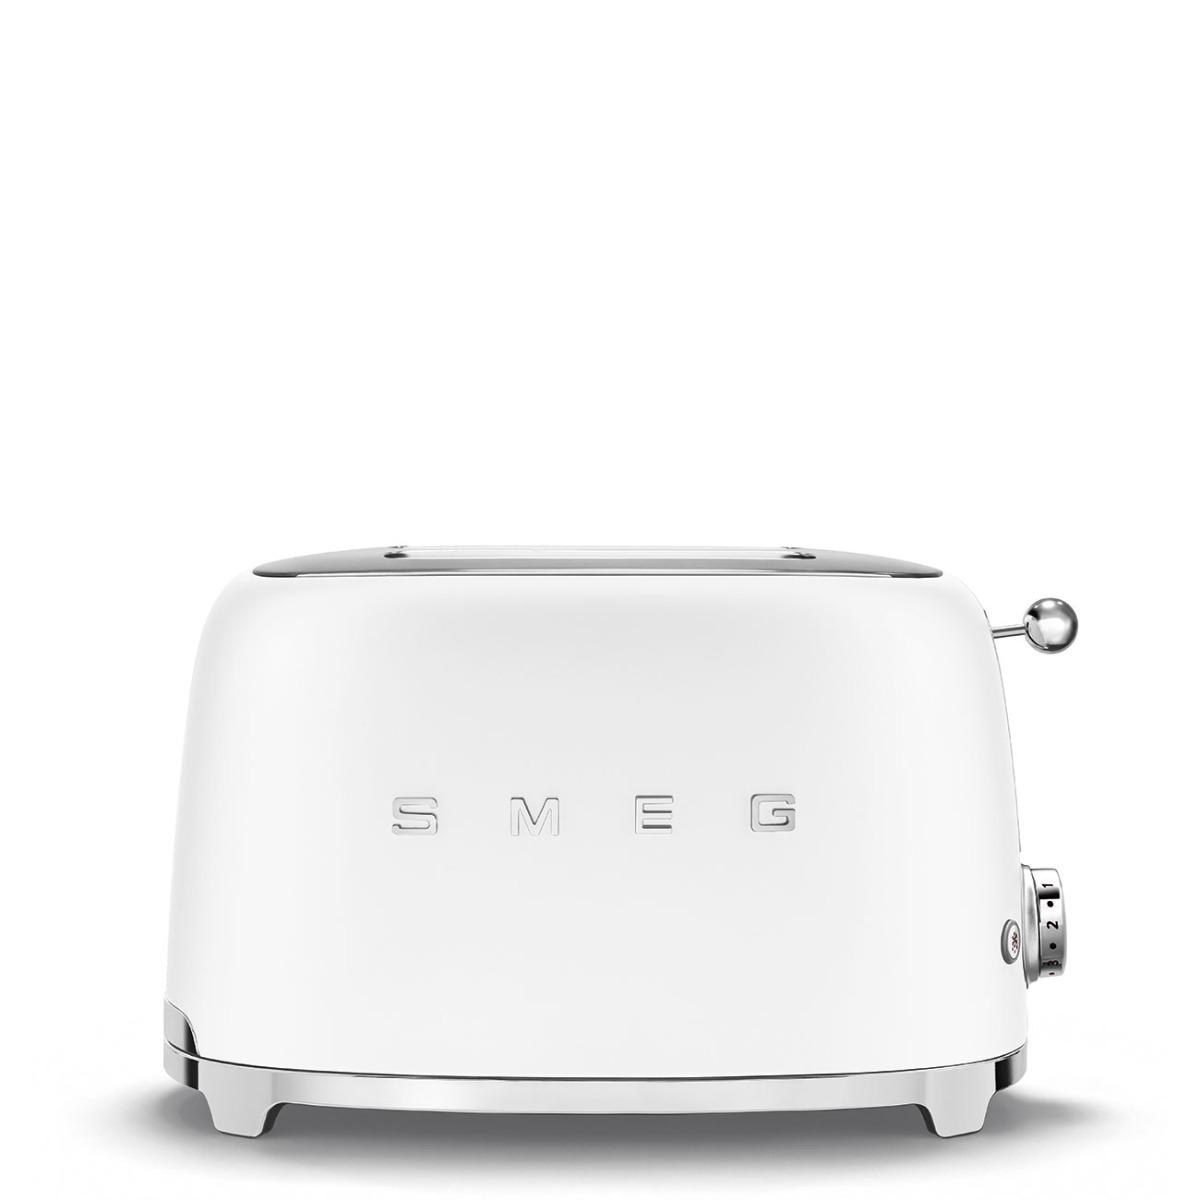 توستر كهربائي سميج ريترو 2 شريحة 950 واط أبيض Smeg 2 Slice Toaster